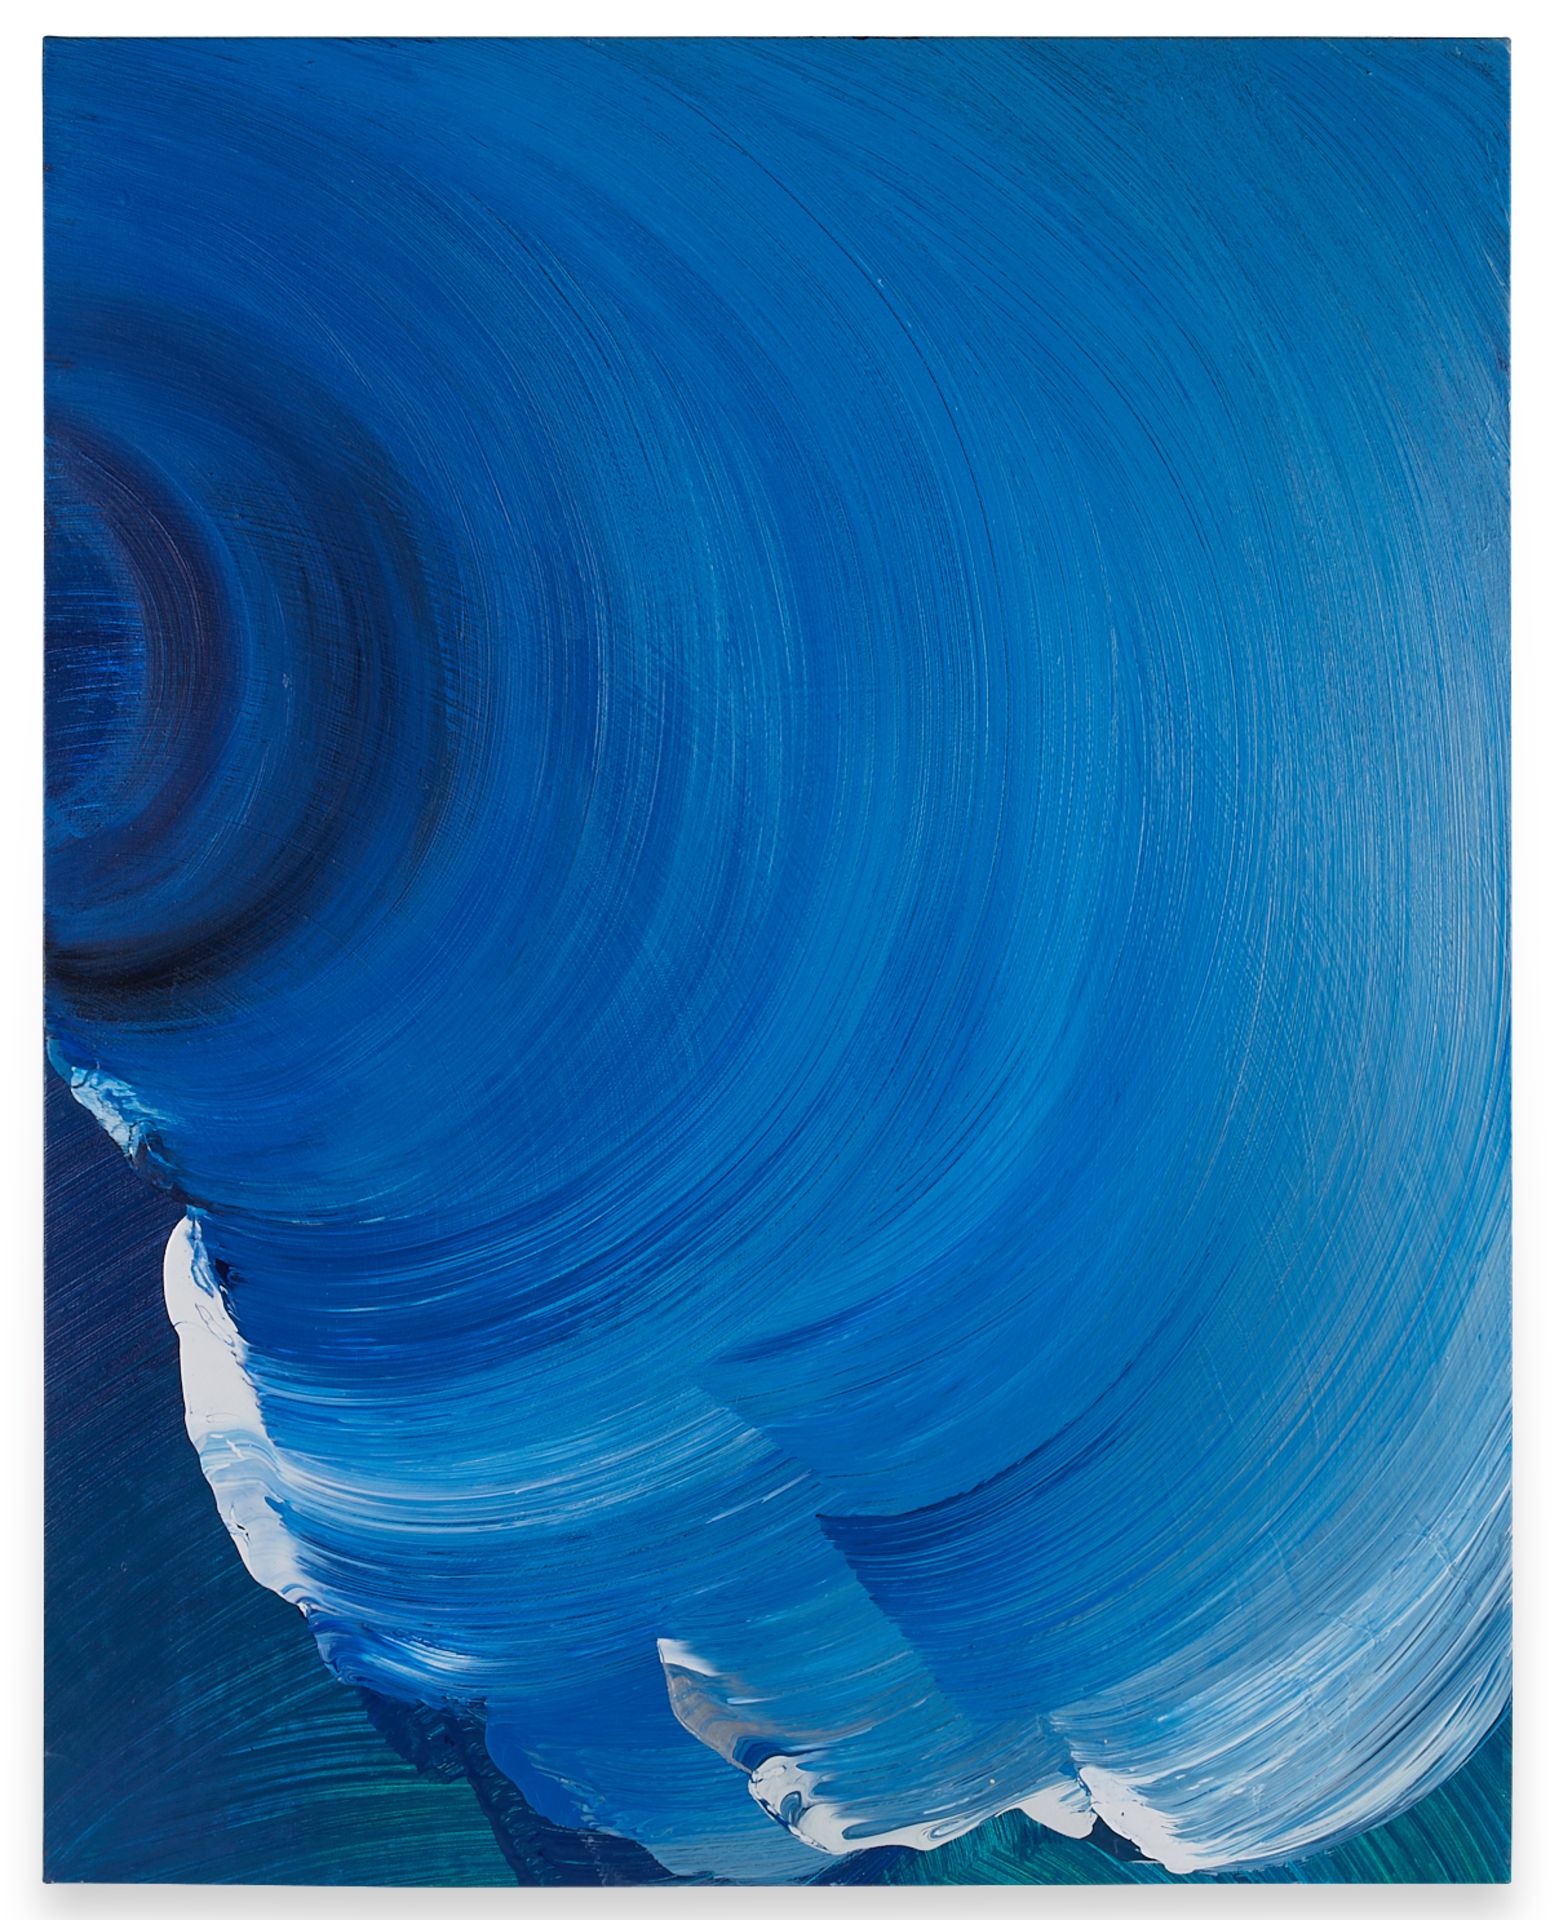 Sandi Sloane "Blue Night Wave" Mixed Media 2000 - Image 3 of 9